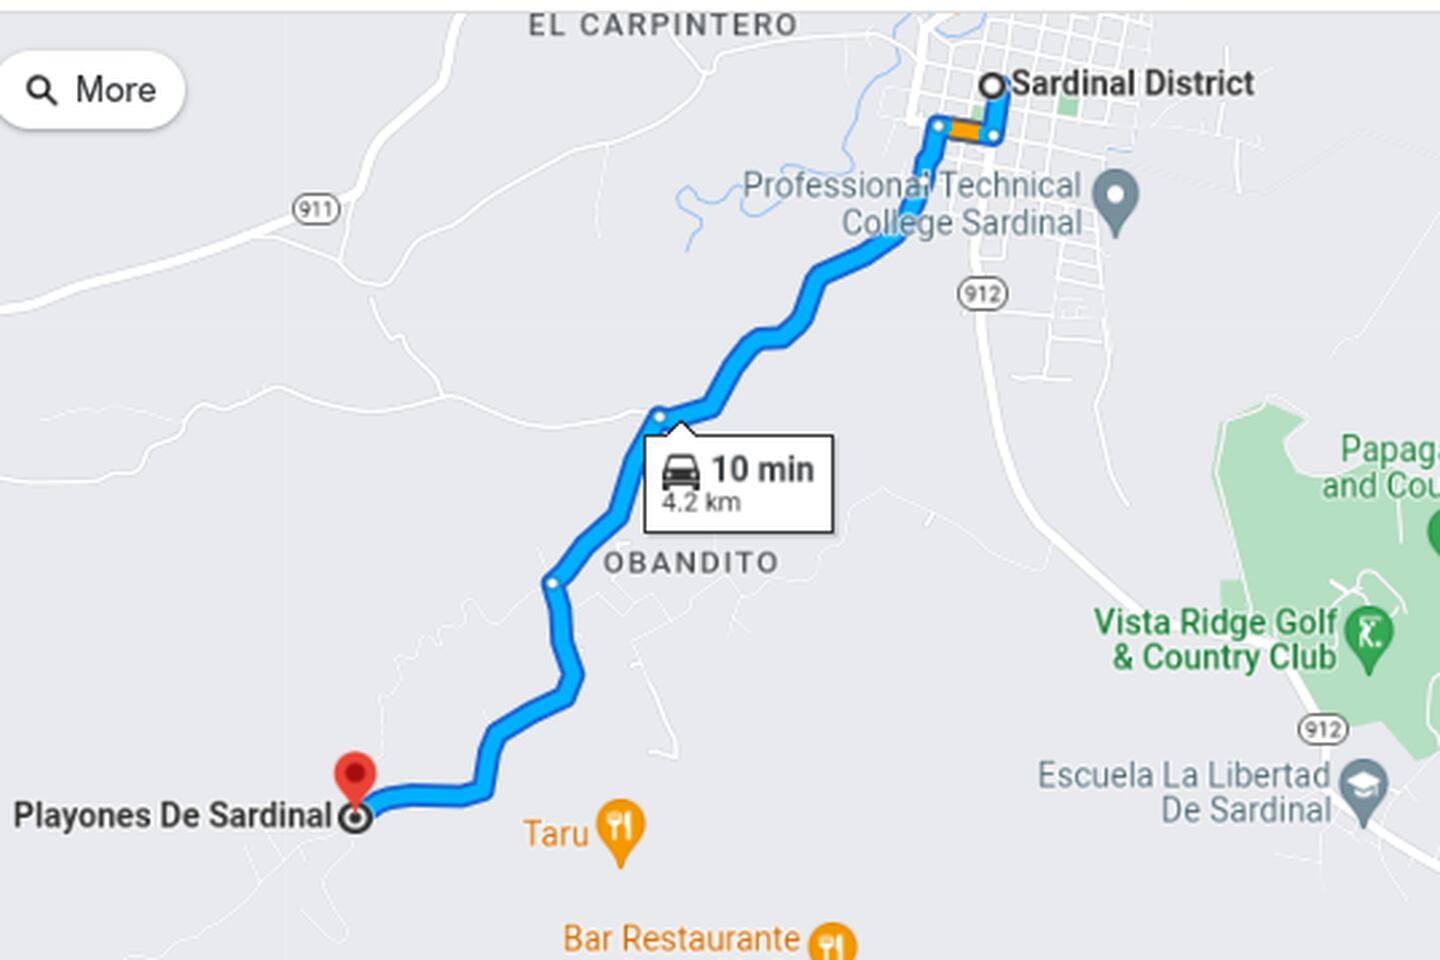 El asesinato ocurrió casi llegando al barrio Playones a unos km, al suroeste del centro de Sardinal, Carrillo. Imagen: Google Maps.